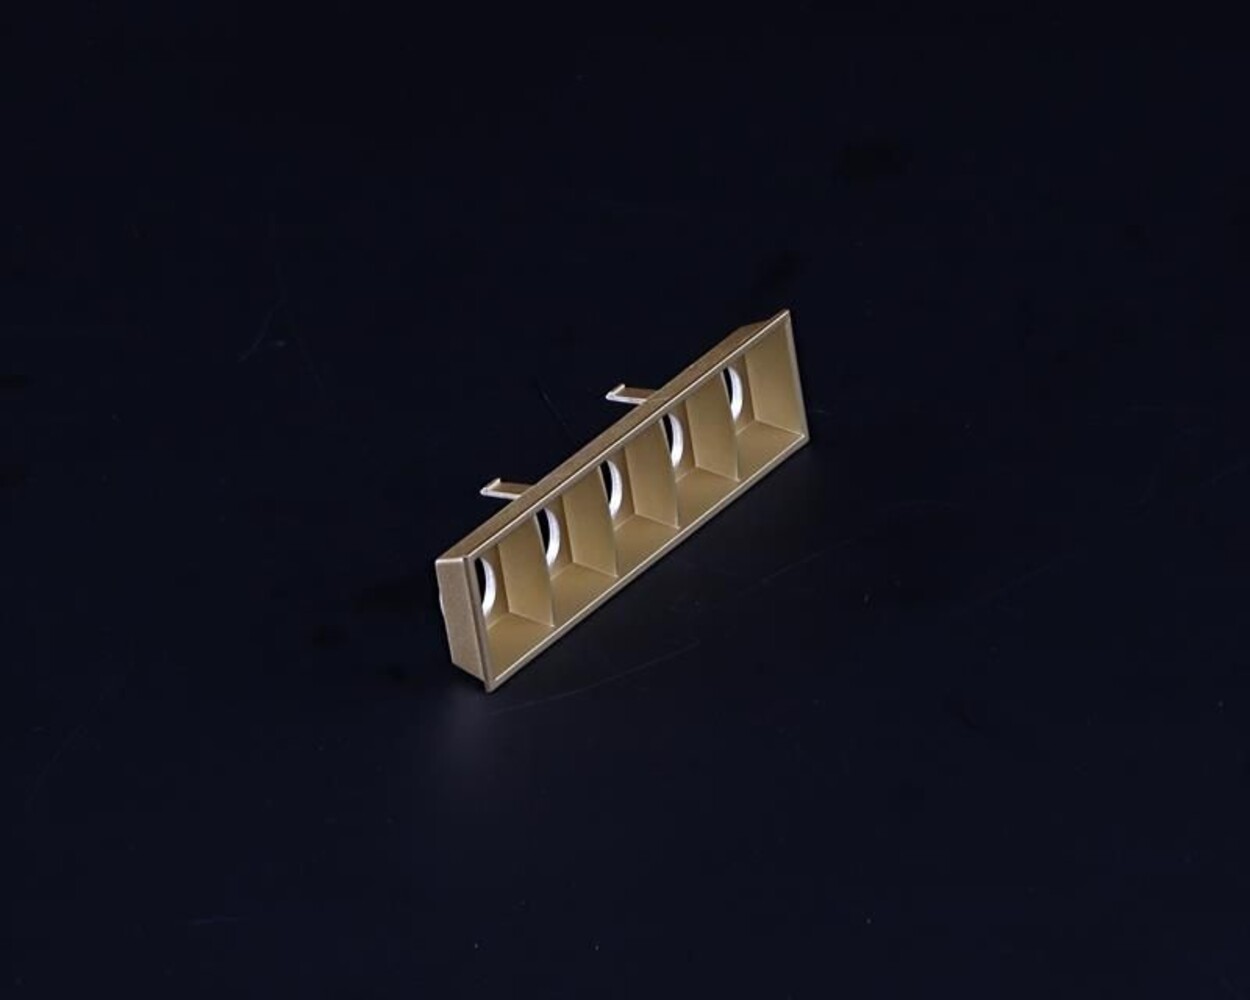 Hochwertiges Deko-Light Zubehör, Ceti 5 Reflektor in glänzendem Gold, mit den Maßen 123 mm Länge, 22 mm Breite und 30 mm Höhe